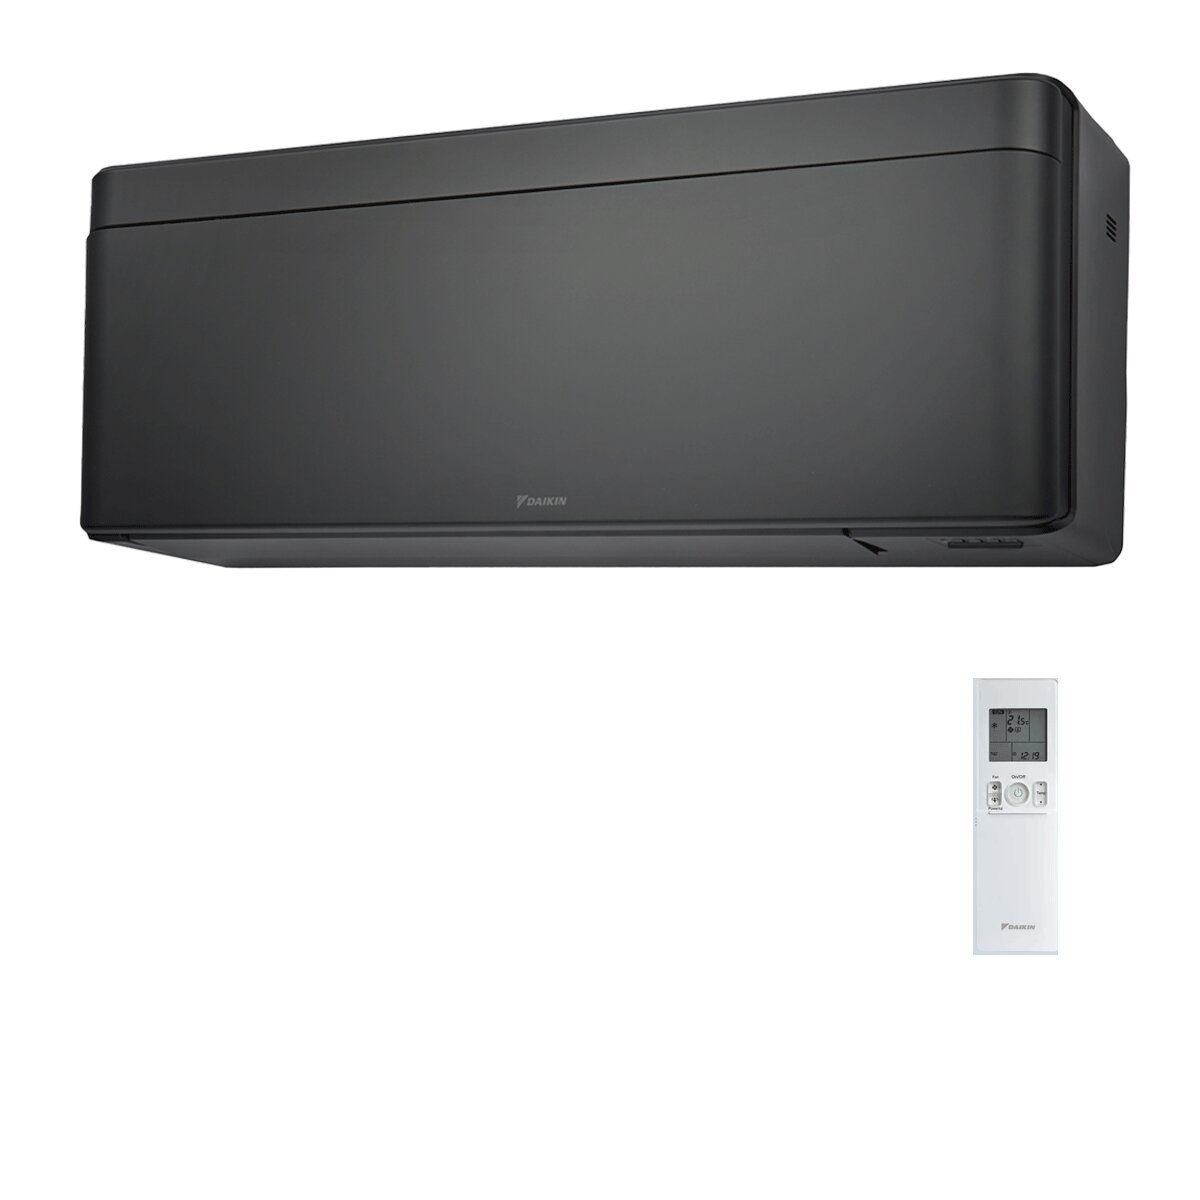 Daikin Stylish Total Black Klimaanlage 9000 BTU Inverter A+++ WiFi R32